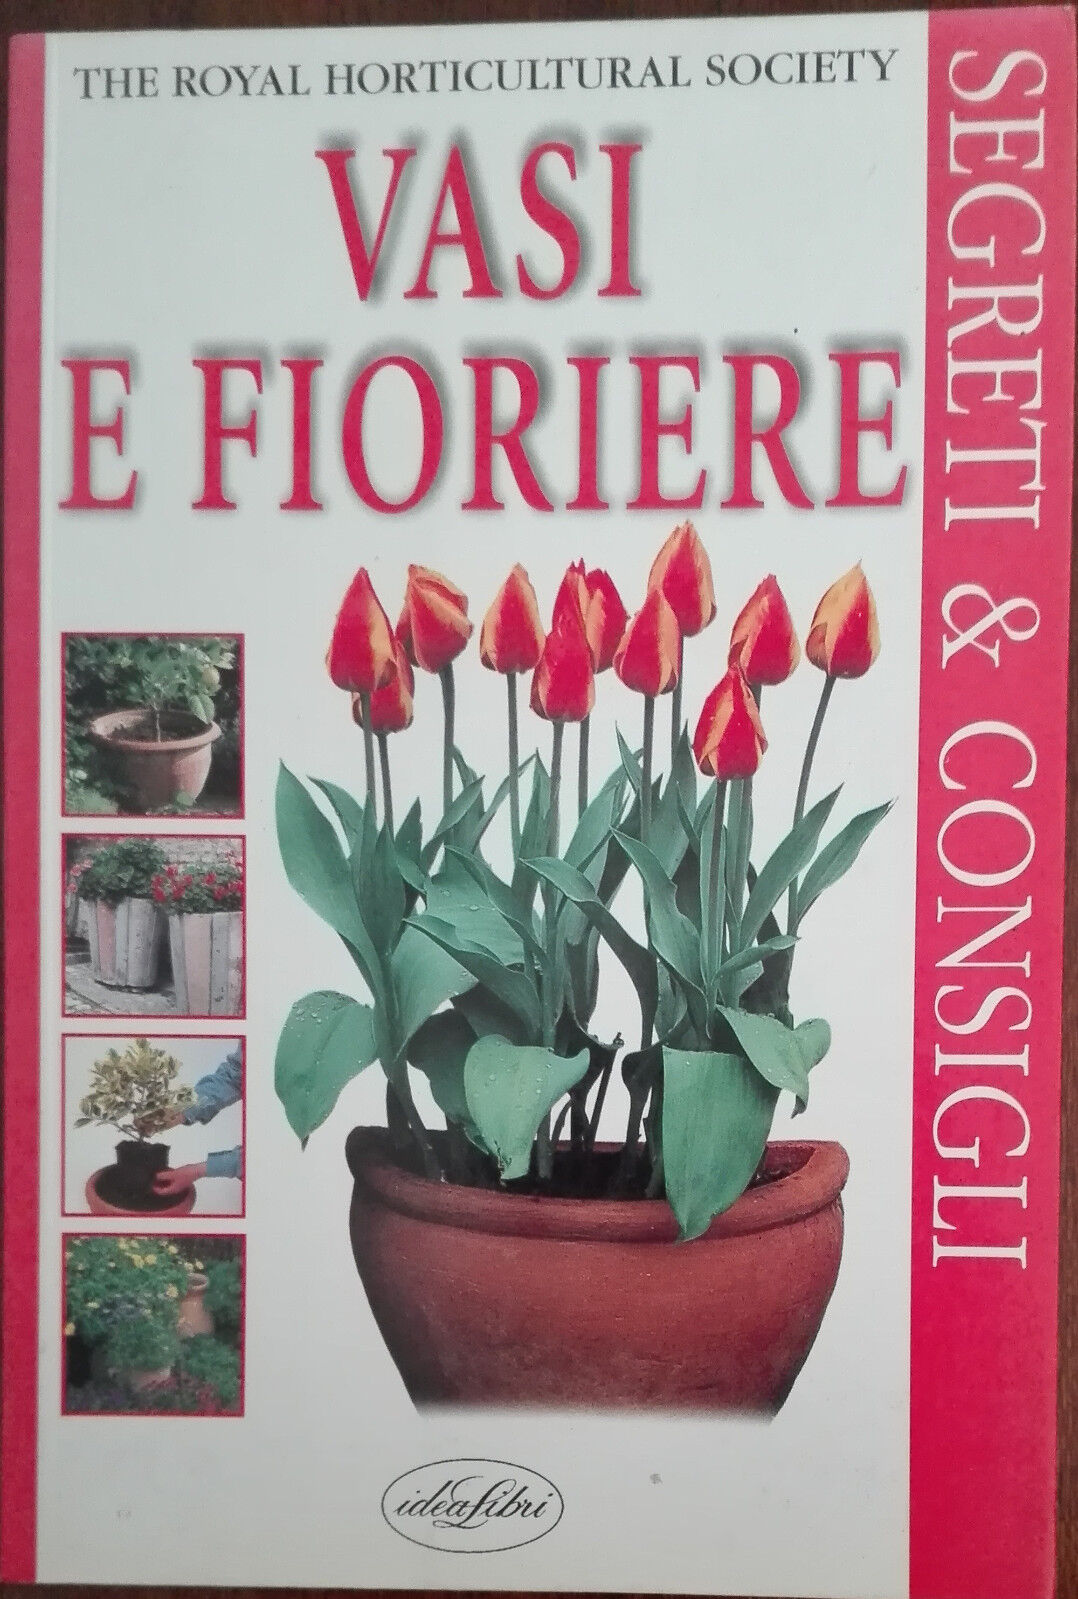 Vasi e fioriere - Peter Robinson - Idealibri,1999 - A libro usato